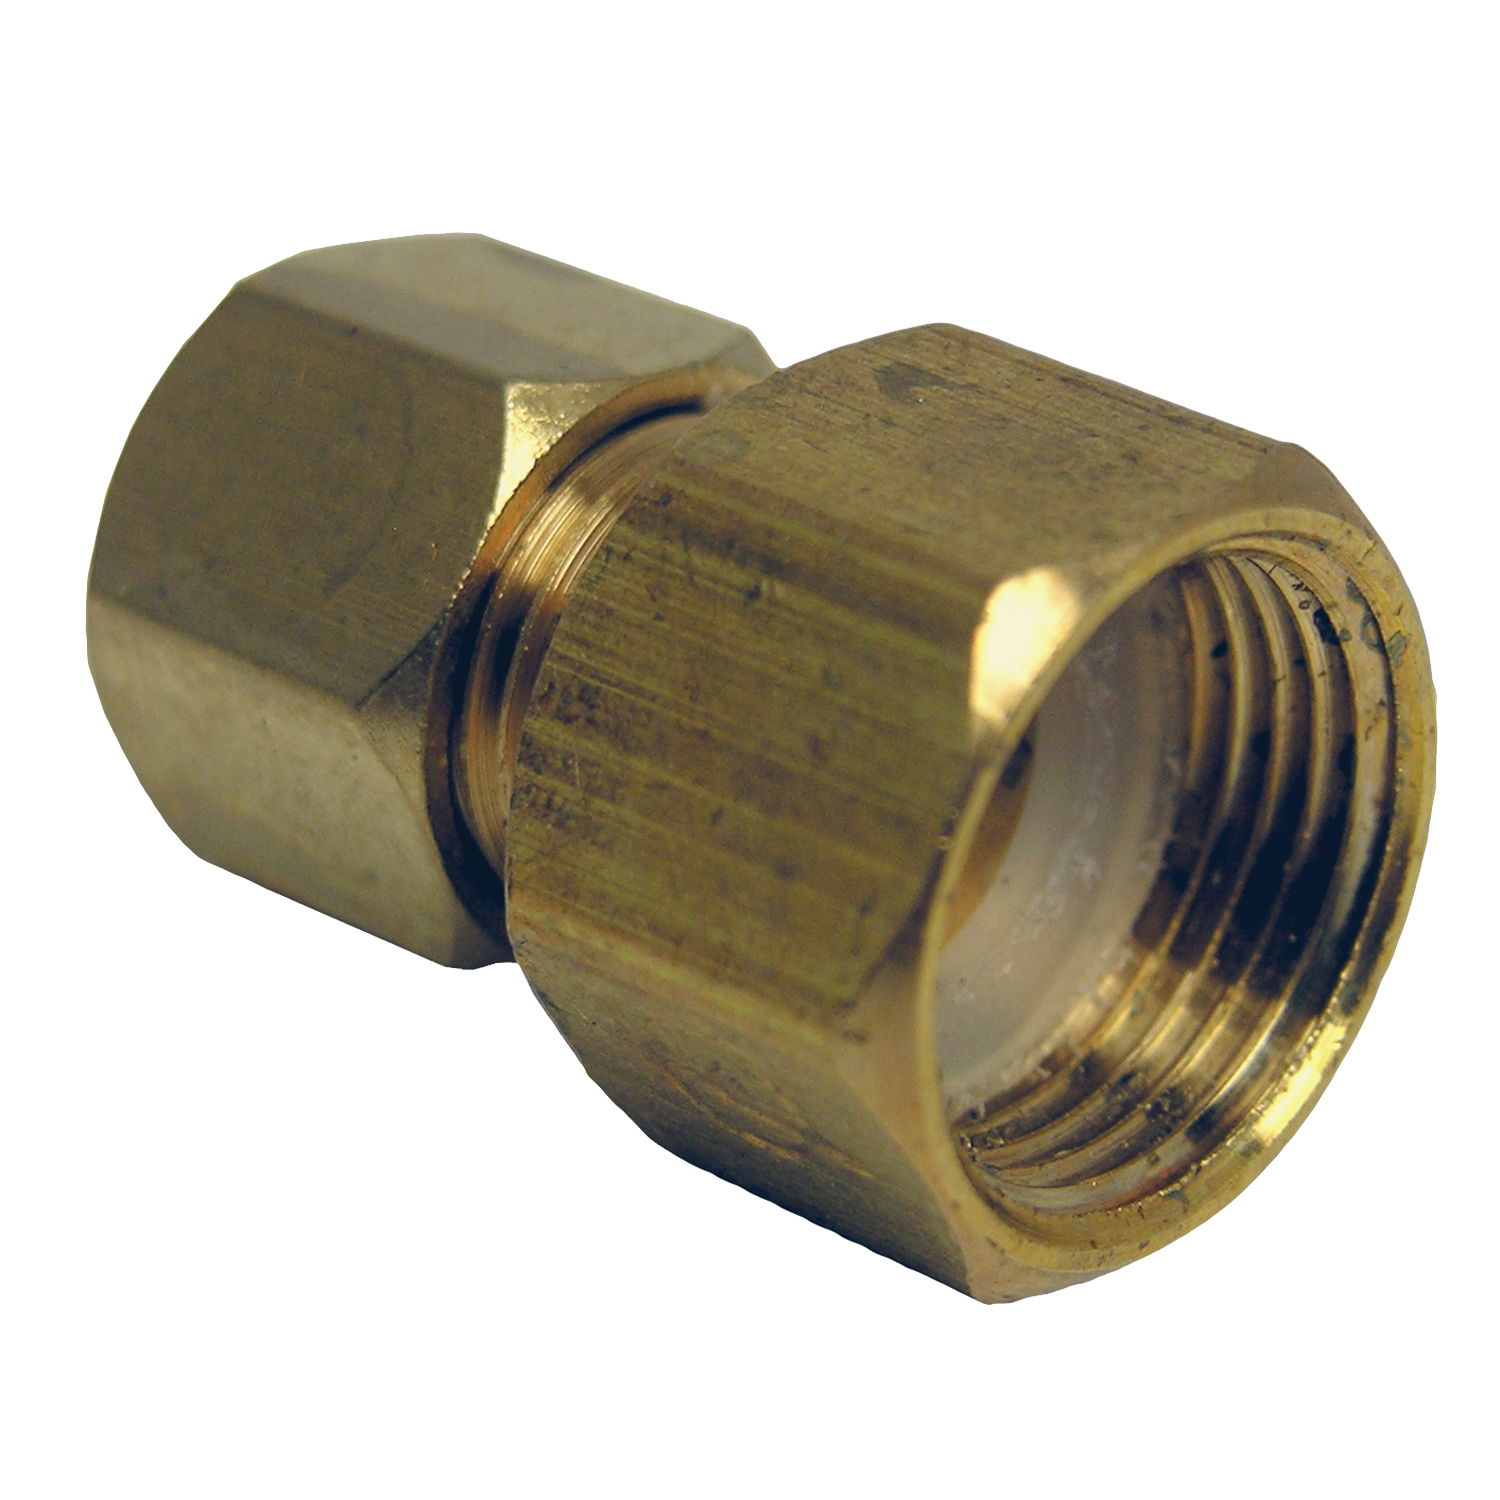 17-6755 Pipe Adapter, 3/8 x 1/4 in, Female Compression x Male Compression, Brass, 300 psi Pressure